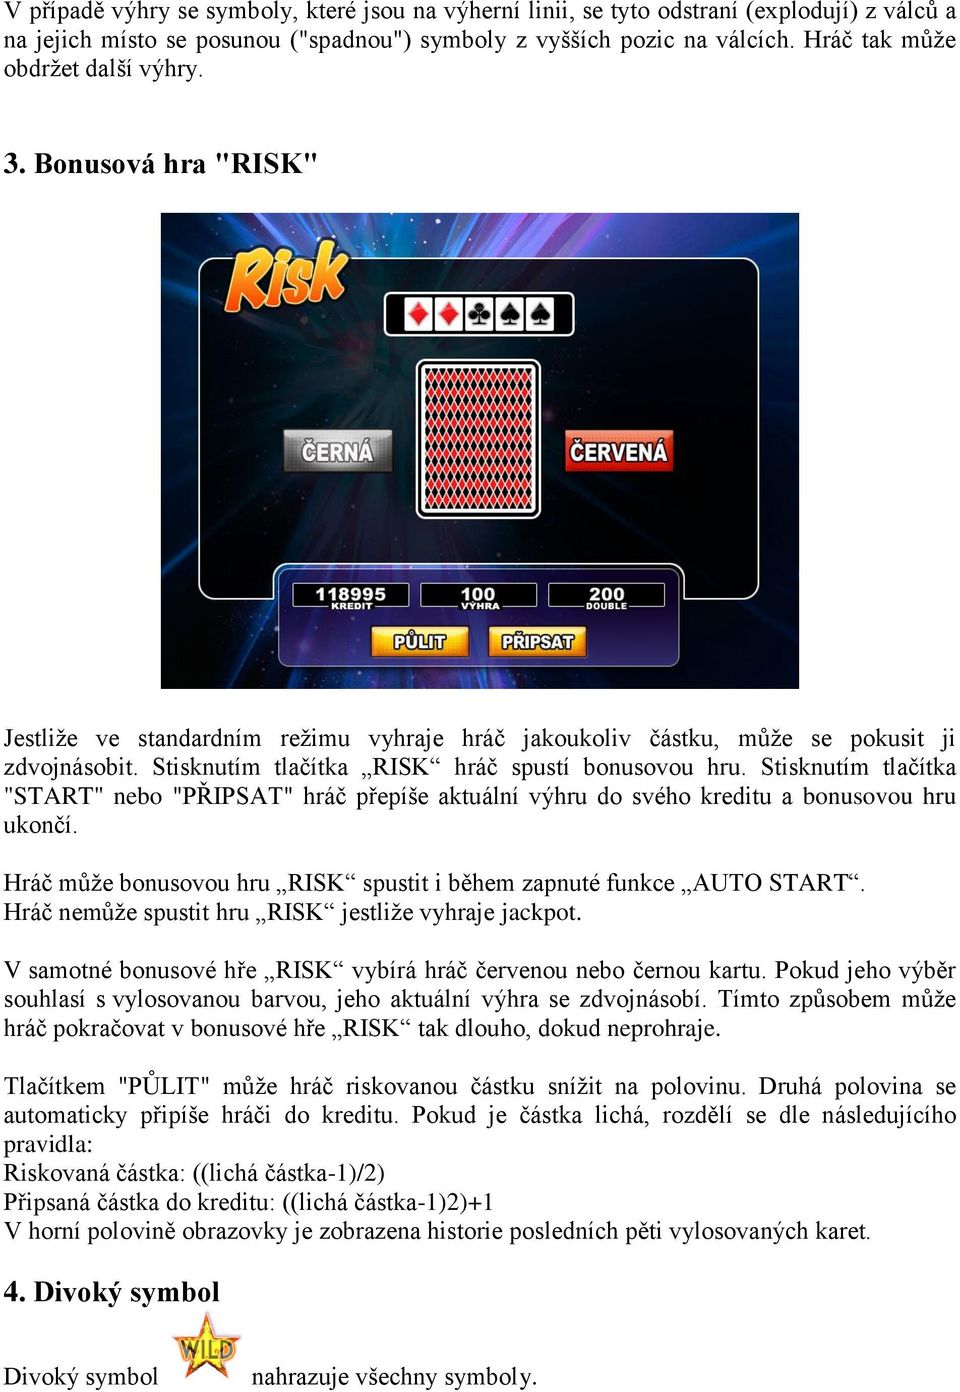 Stisknutím tlačítka RISK hráč spustí bonusovou hru. Stisknutím tlačítka "START" nebo "PŘIPSAT" hráč přepíše aktuální výhru do svého kreditu a bonusovou hru ukončí.